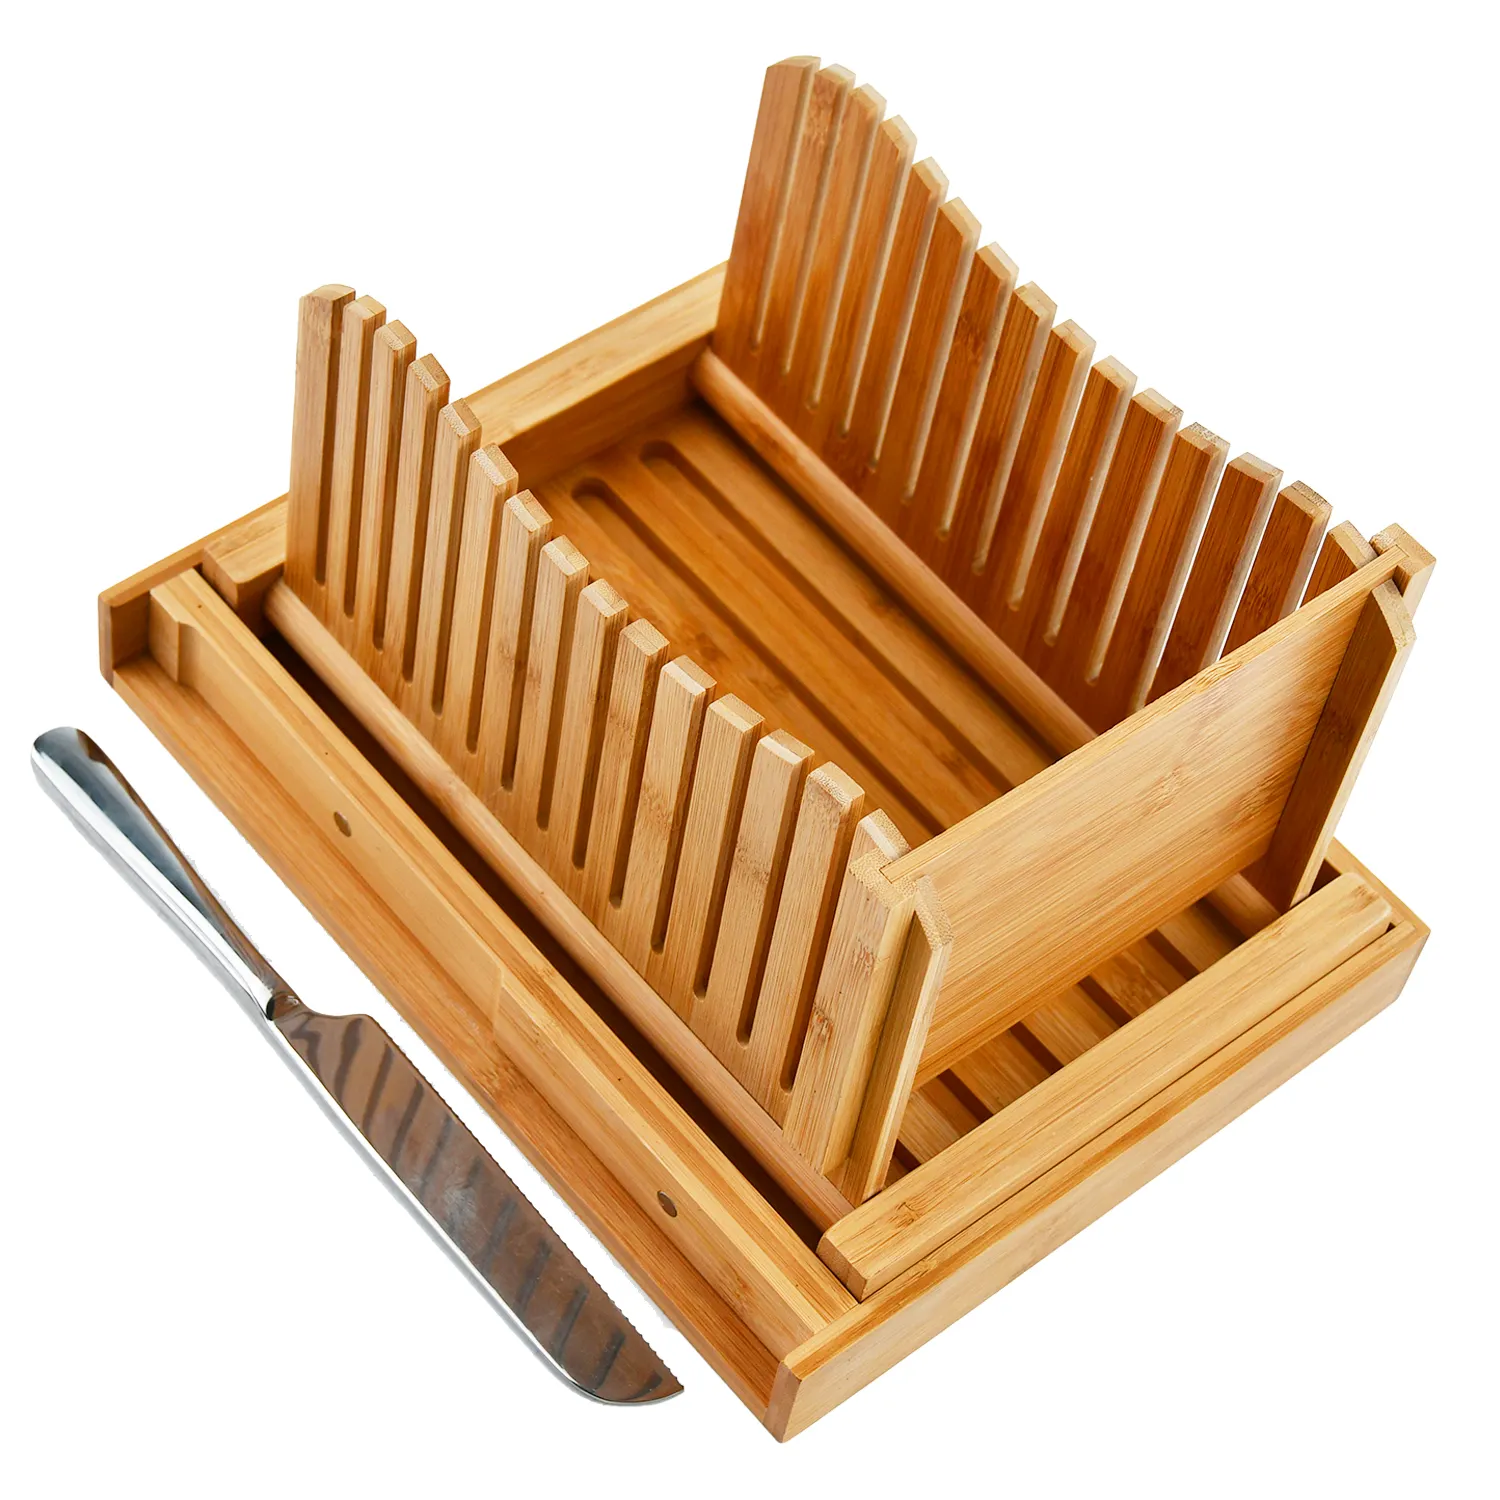 Alat pengiris roti bambu lipat, pemandu pemotong roti dapat disesuaikan untuk roti buatan rumah